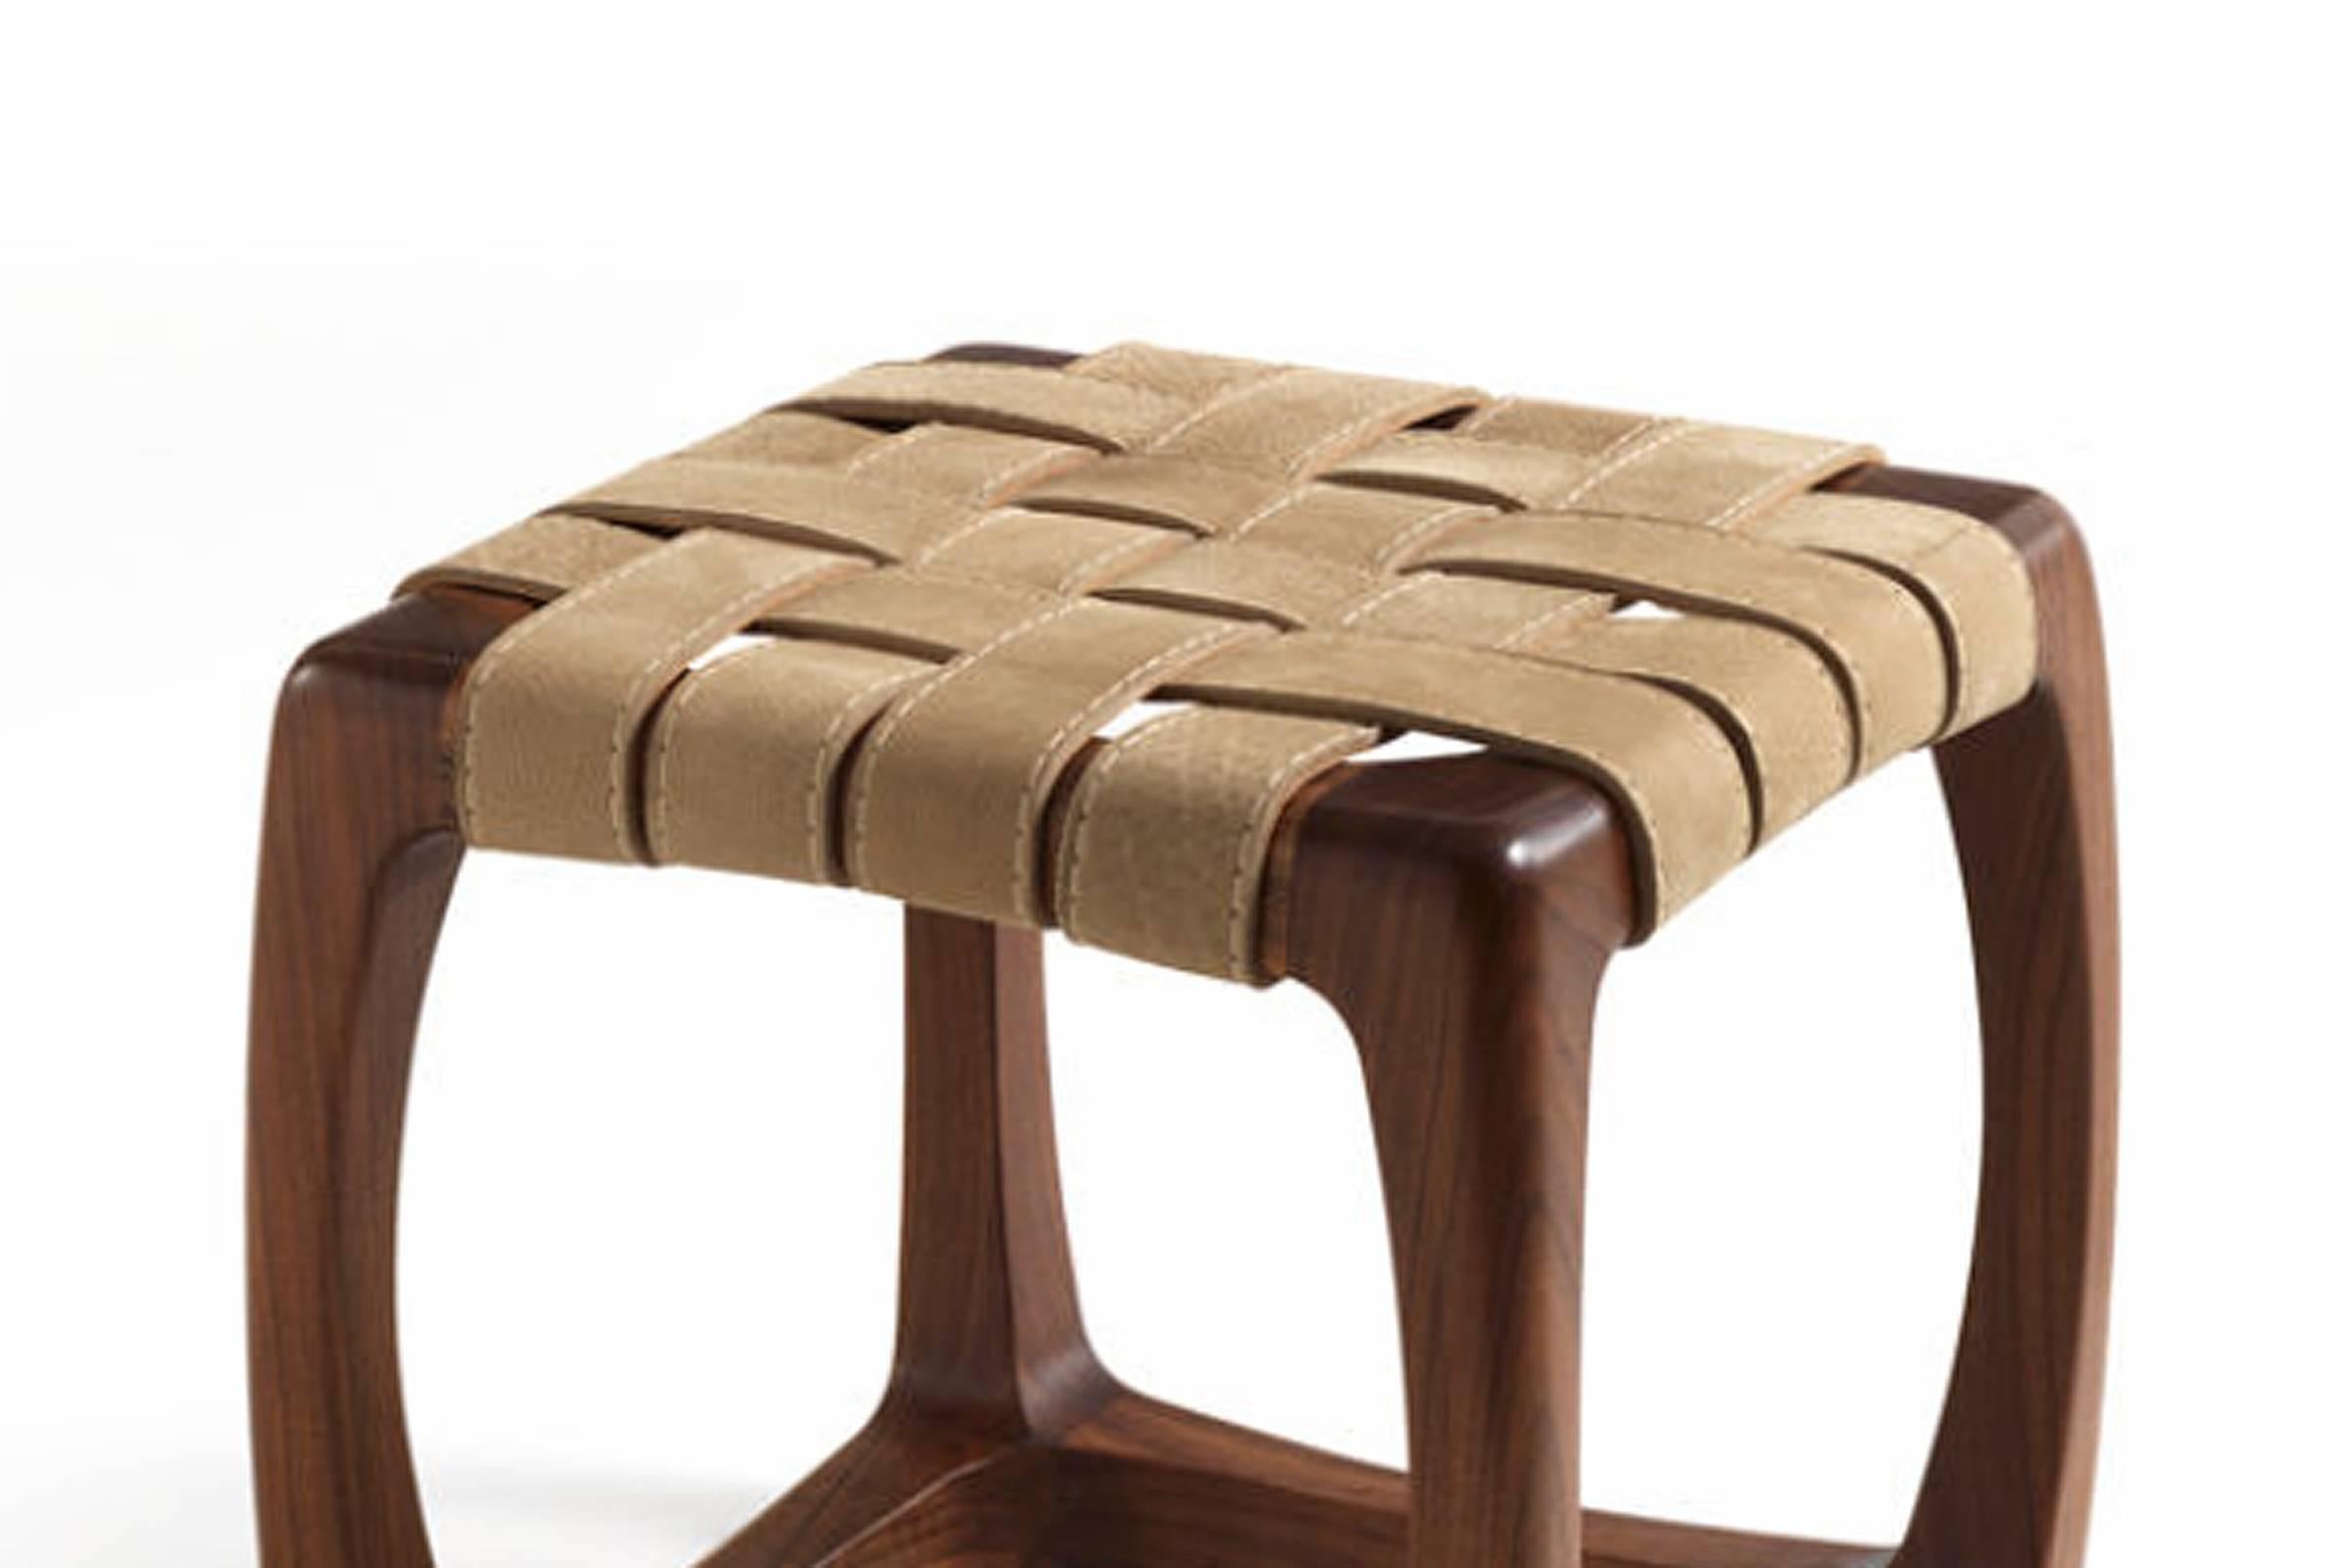 Tabouret Berlingo en noyer massif poli naturel 
en bois et avec siège en cuir véritable D4 straps
en finition beige.
Pièce originale également disponible en fauteuil, sur demande.
